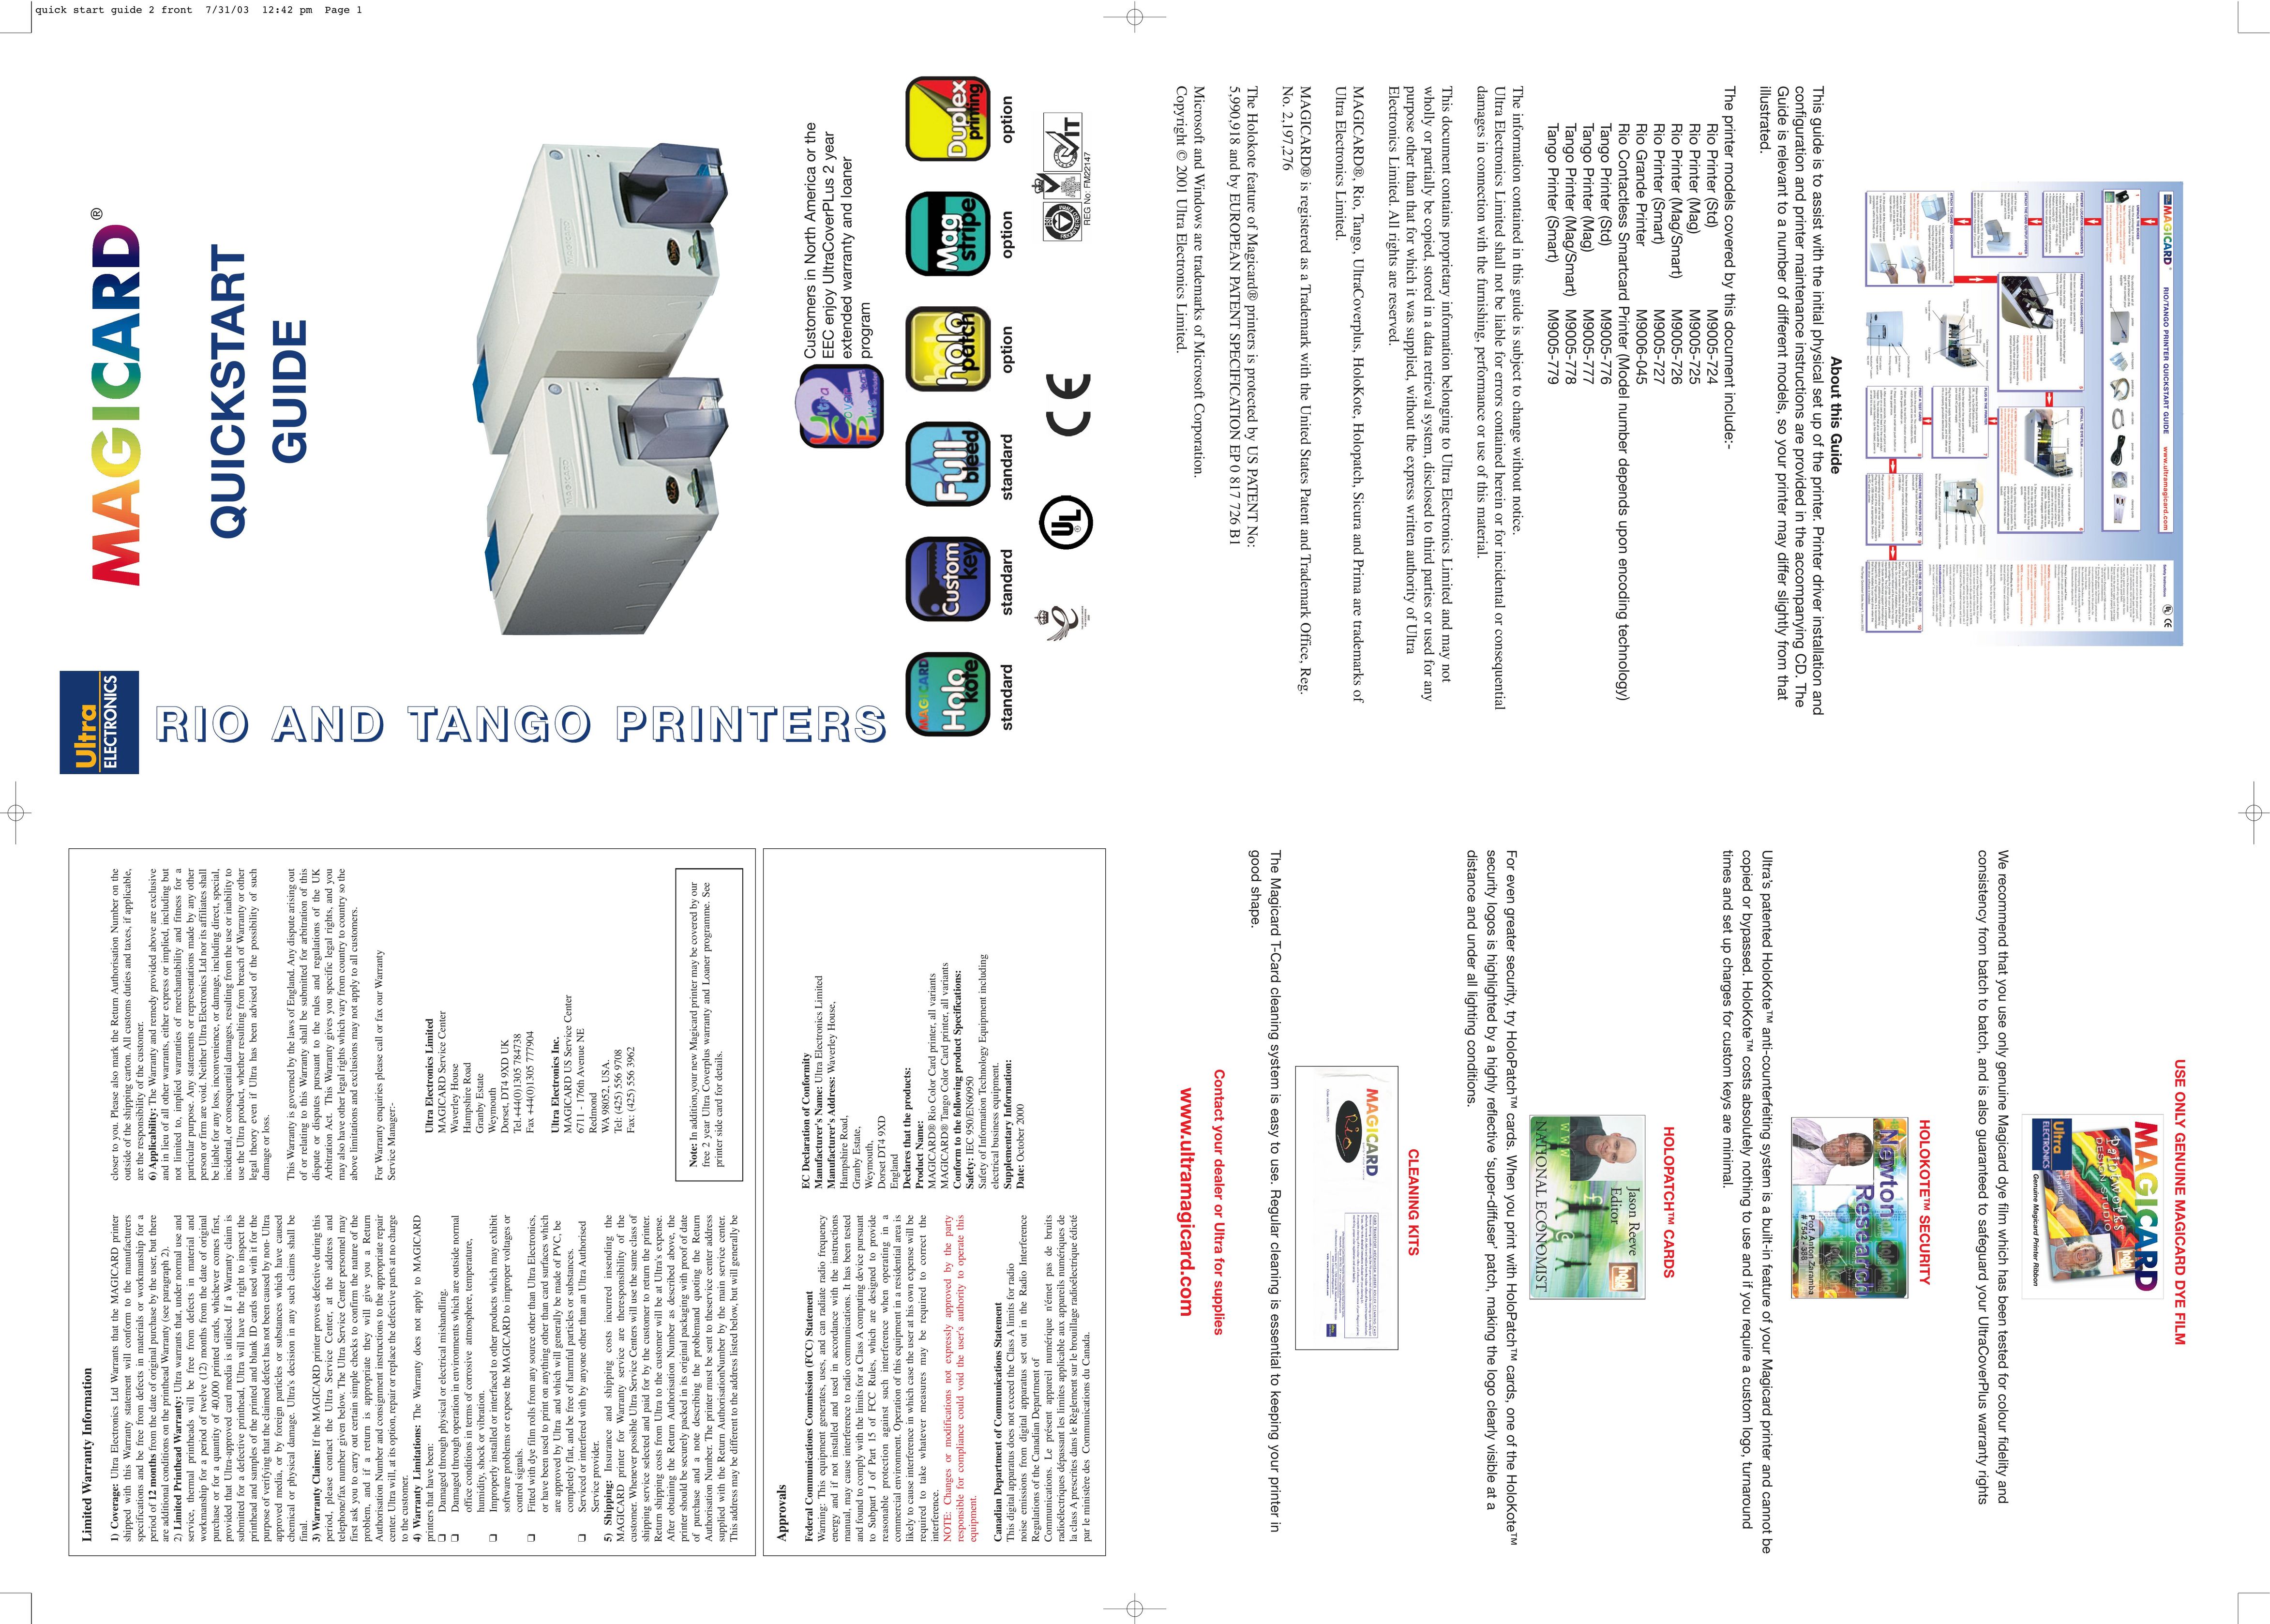 Ultra electronic M9005-726 Printer User Manual